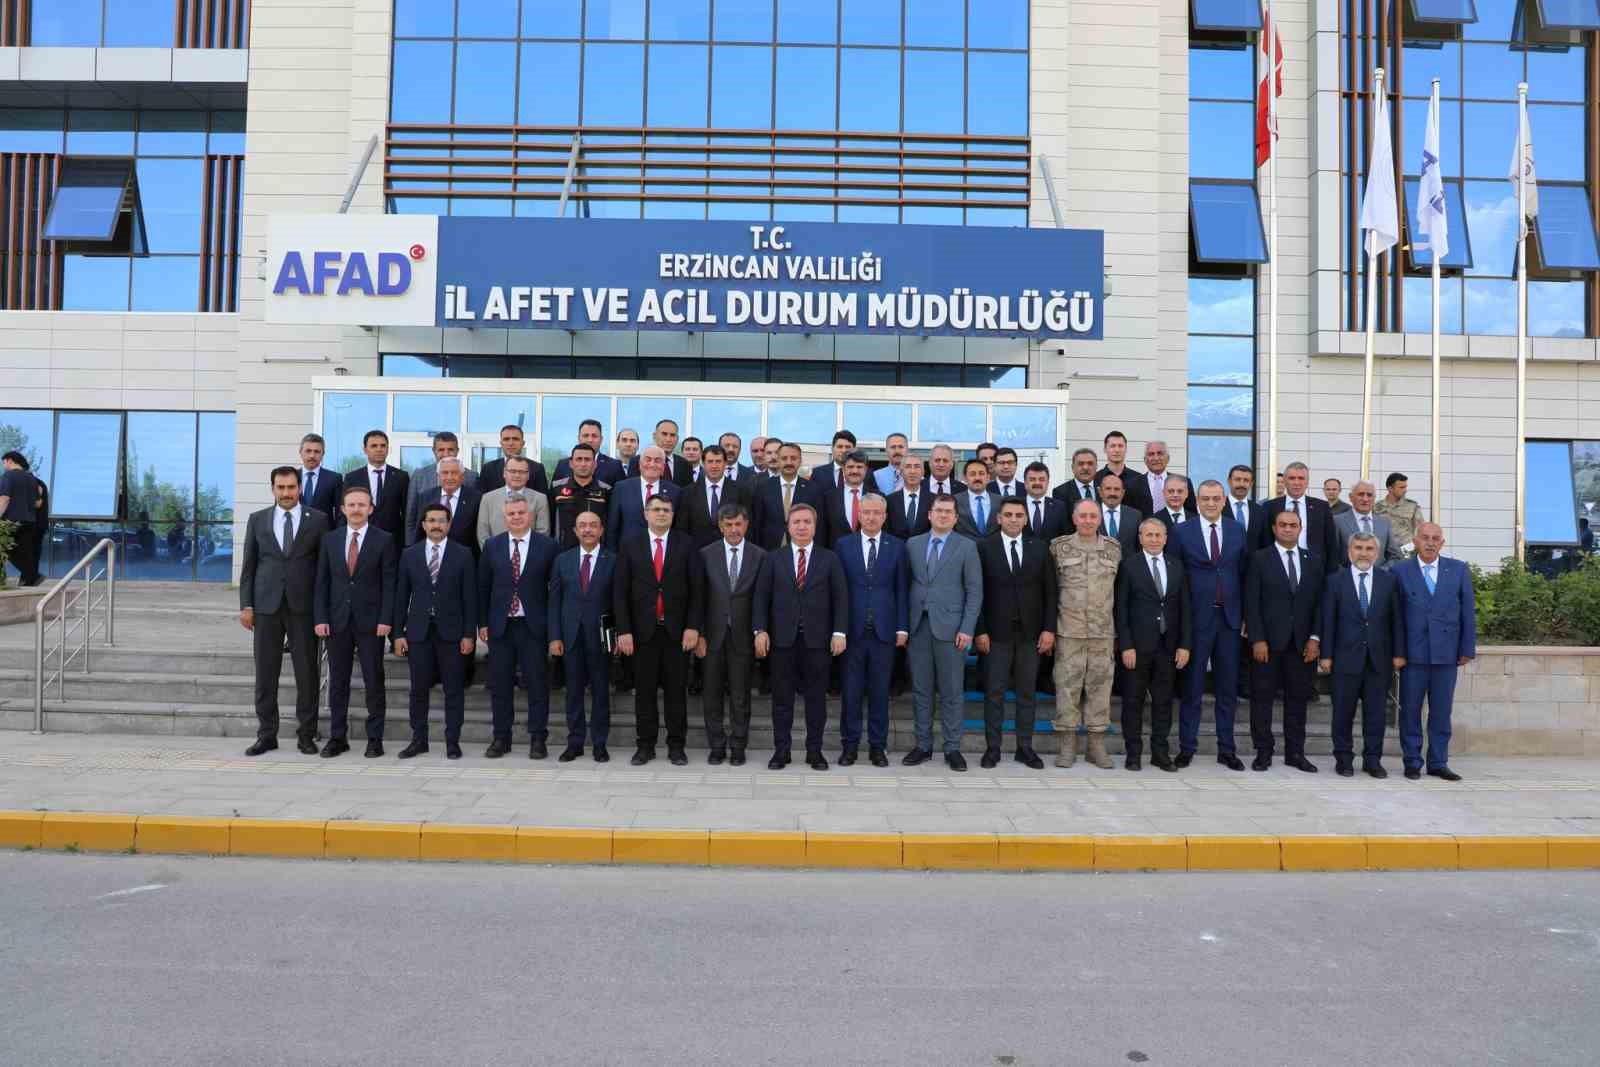 Erzincan’daki yatırımlar değerlendirildi
